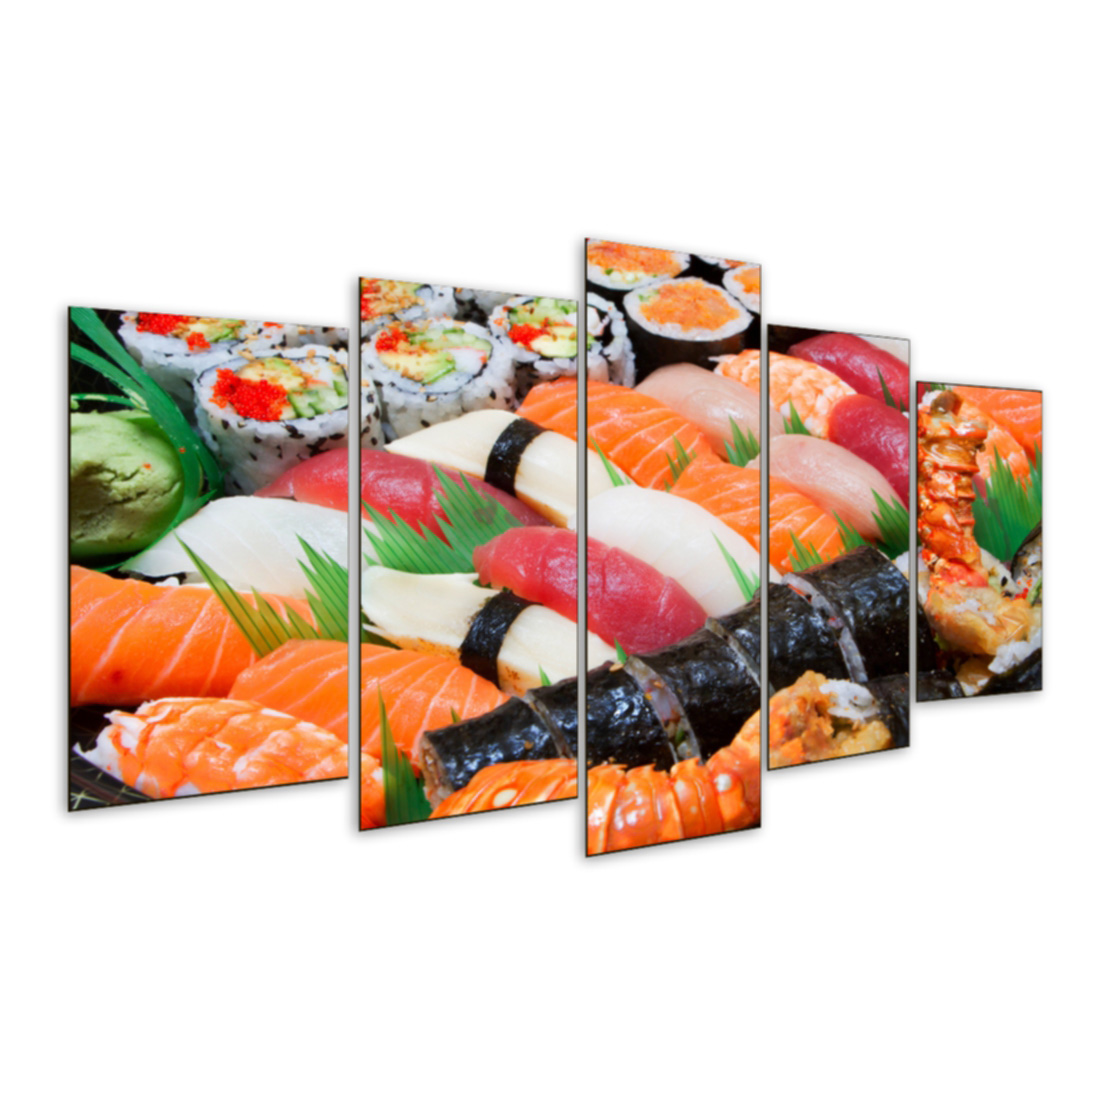 Quadro 5 Peças Mosaico Sushi Salmao Comida Oriental